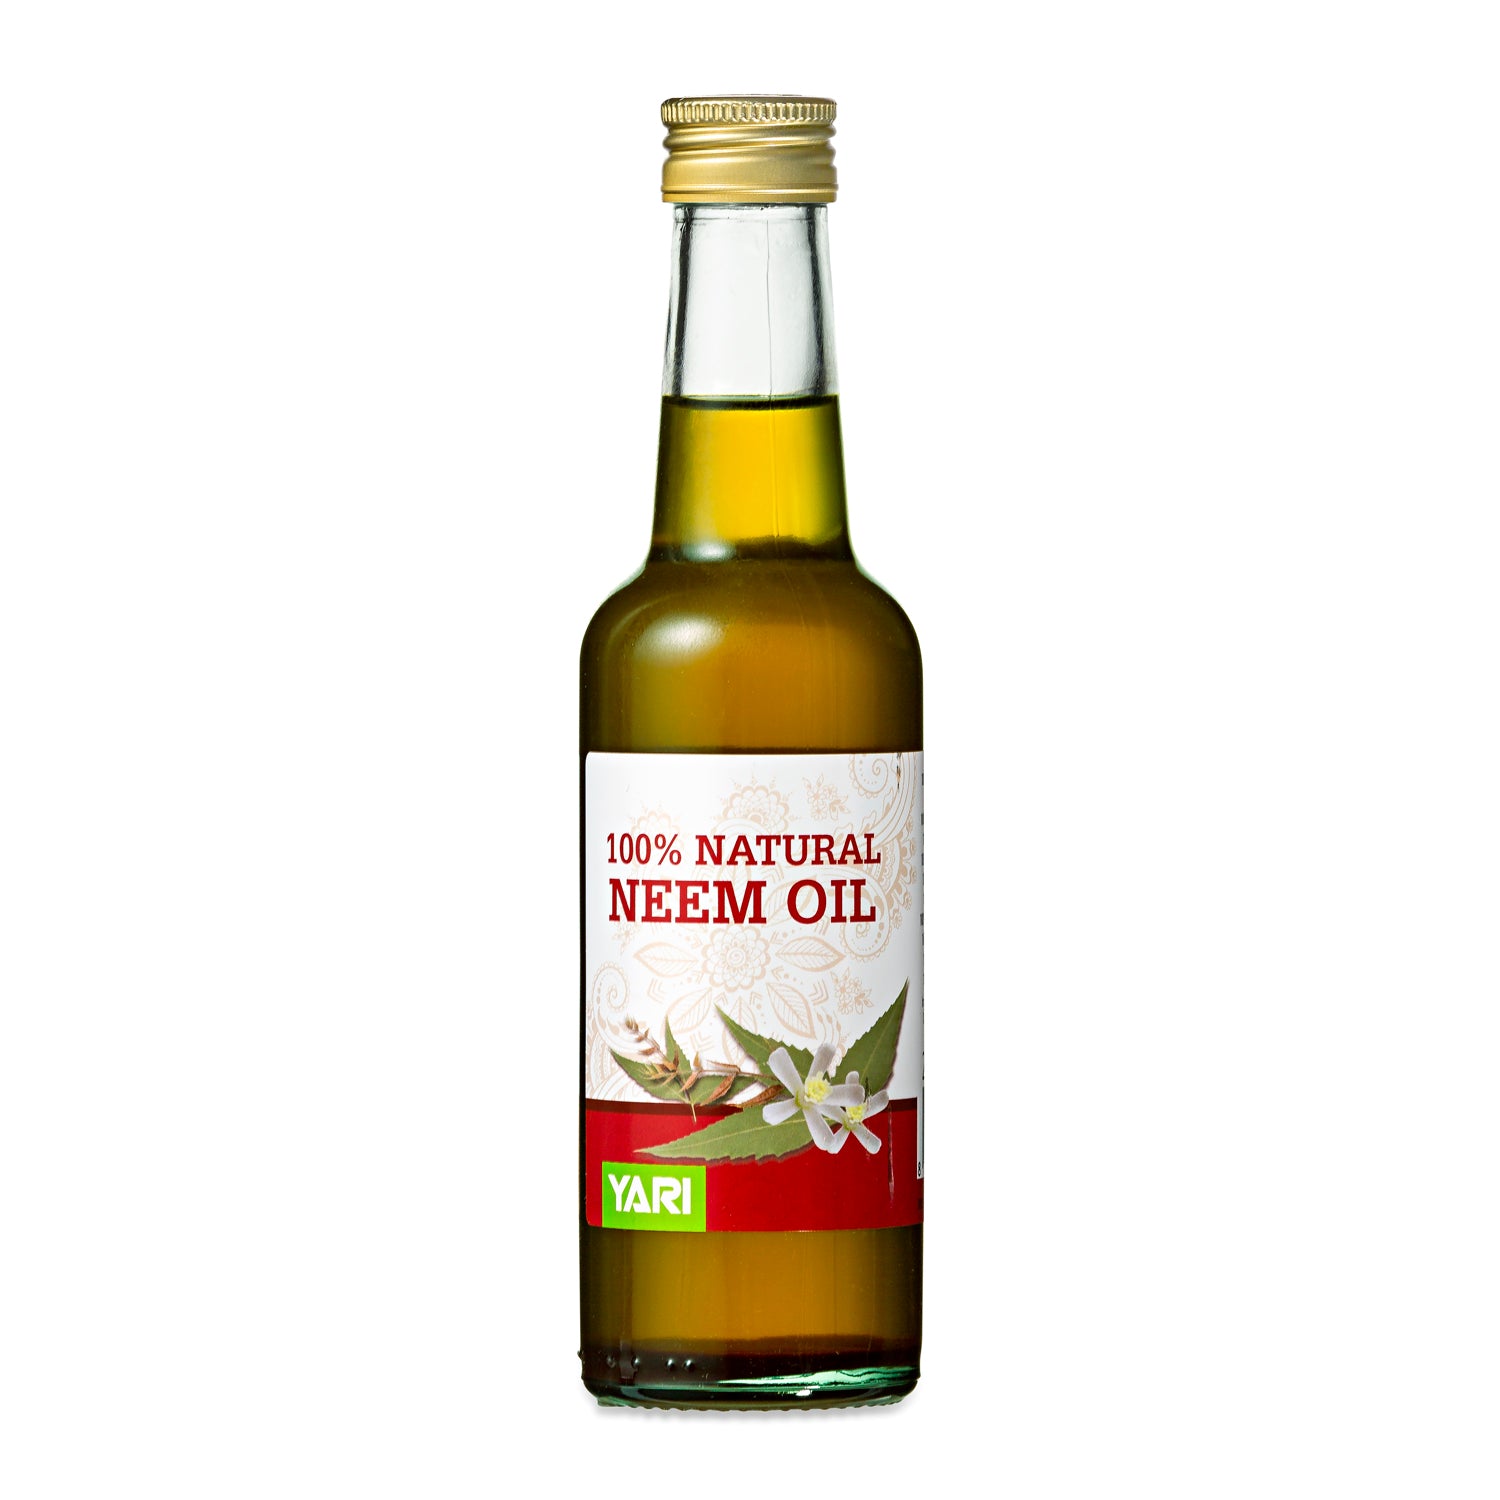 Yari - 100% Natural Neem Oil 250ml